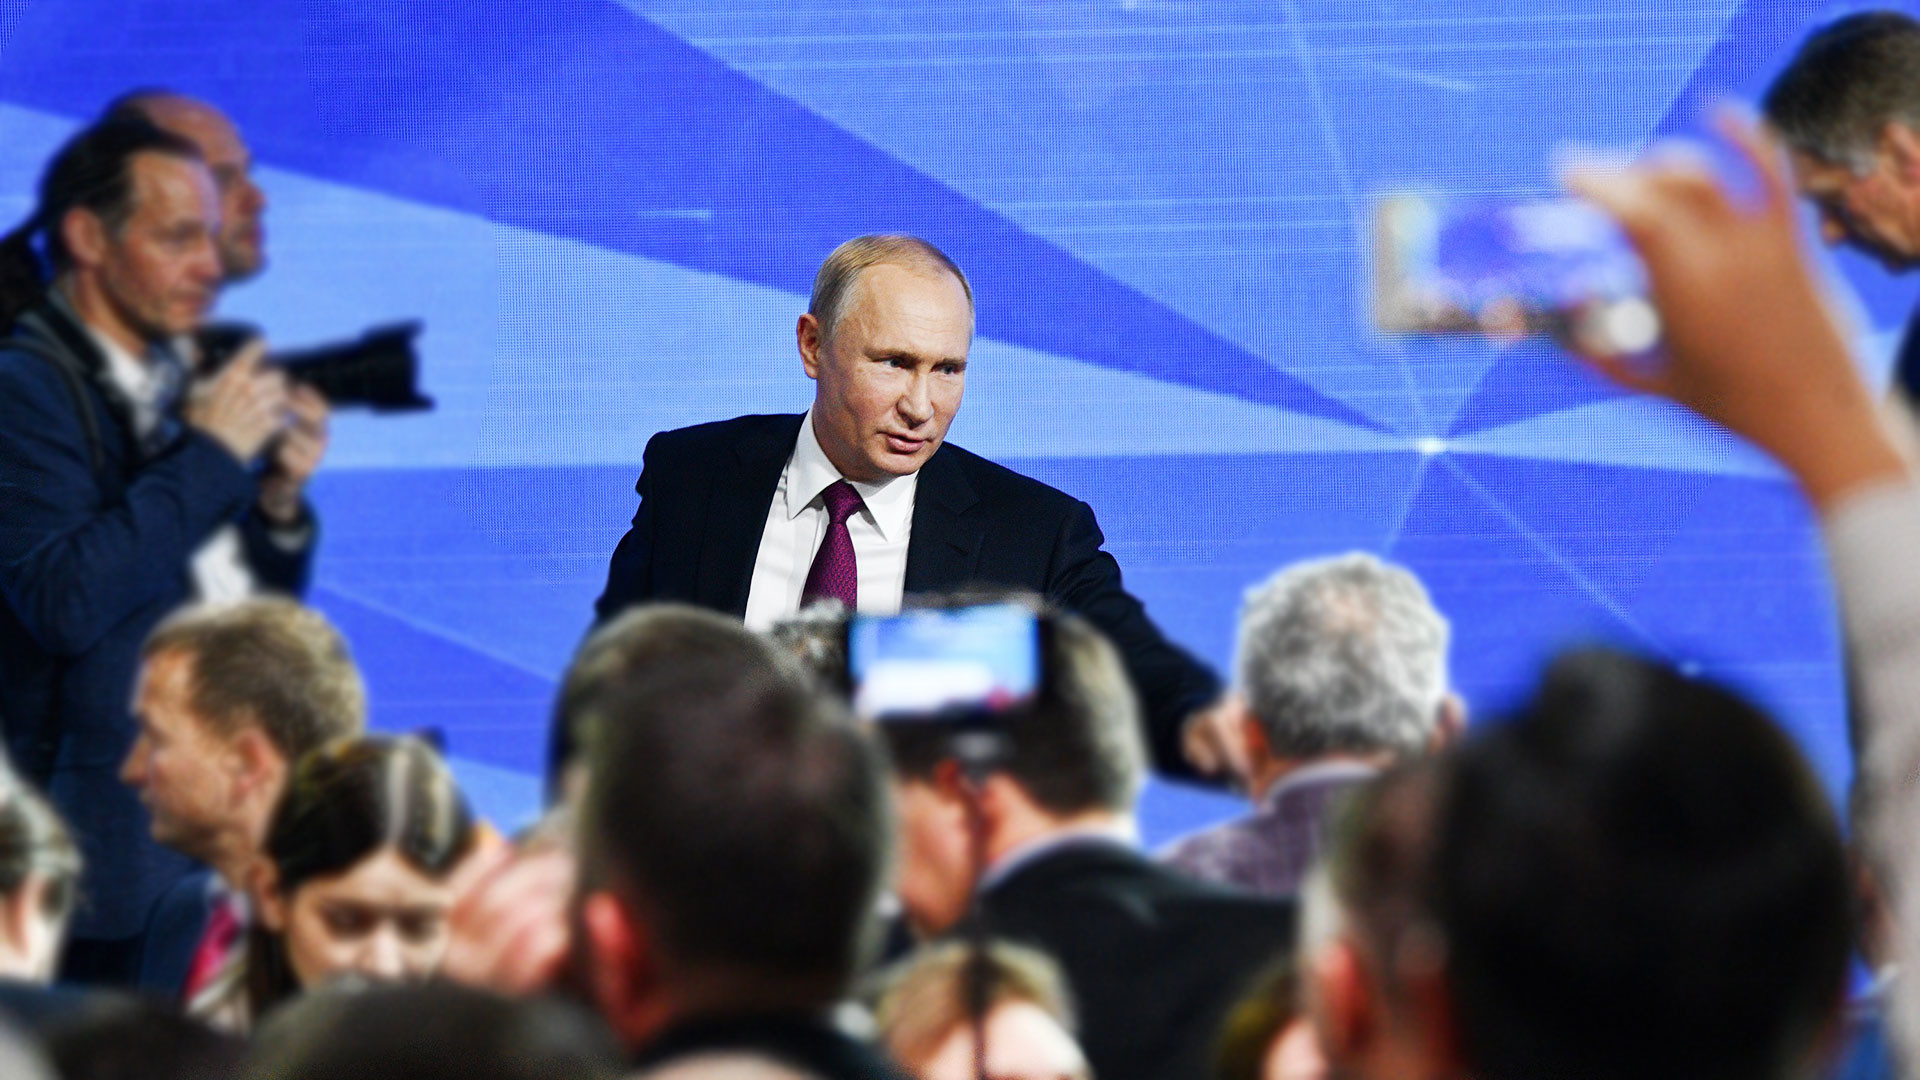 Владимир Путин: пресс-конференция. Что спрашивали у президента в предыдущие годы